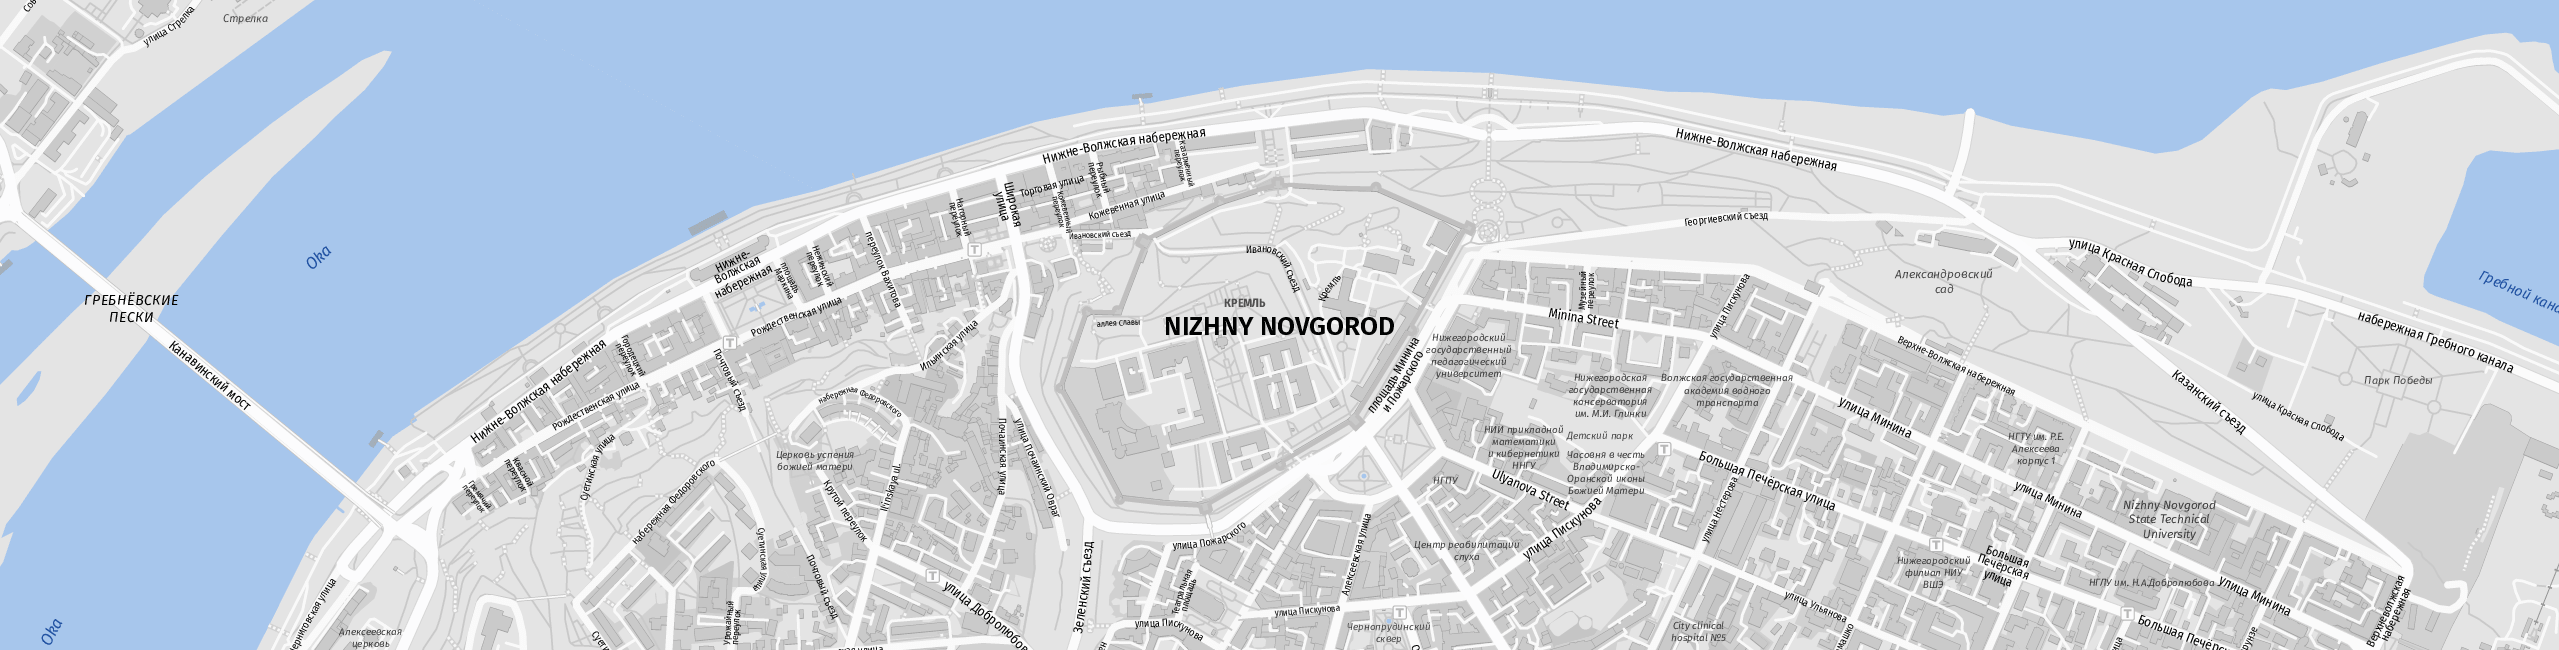 Stadtplan Nizhny Novgorod zum Downloaden.